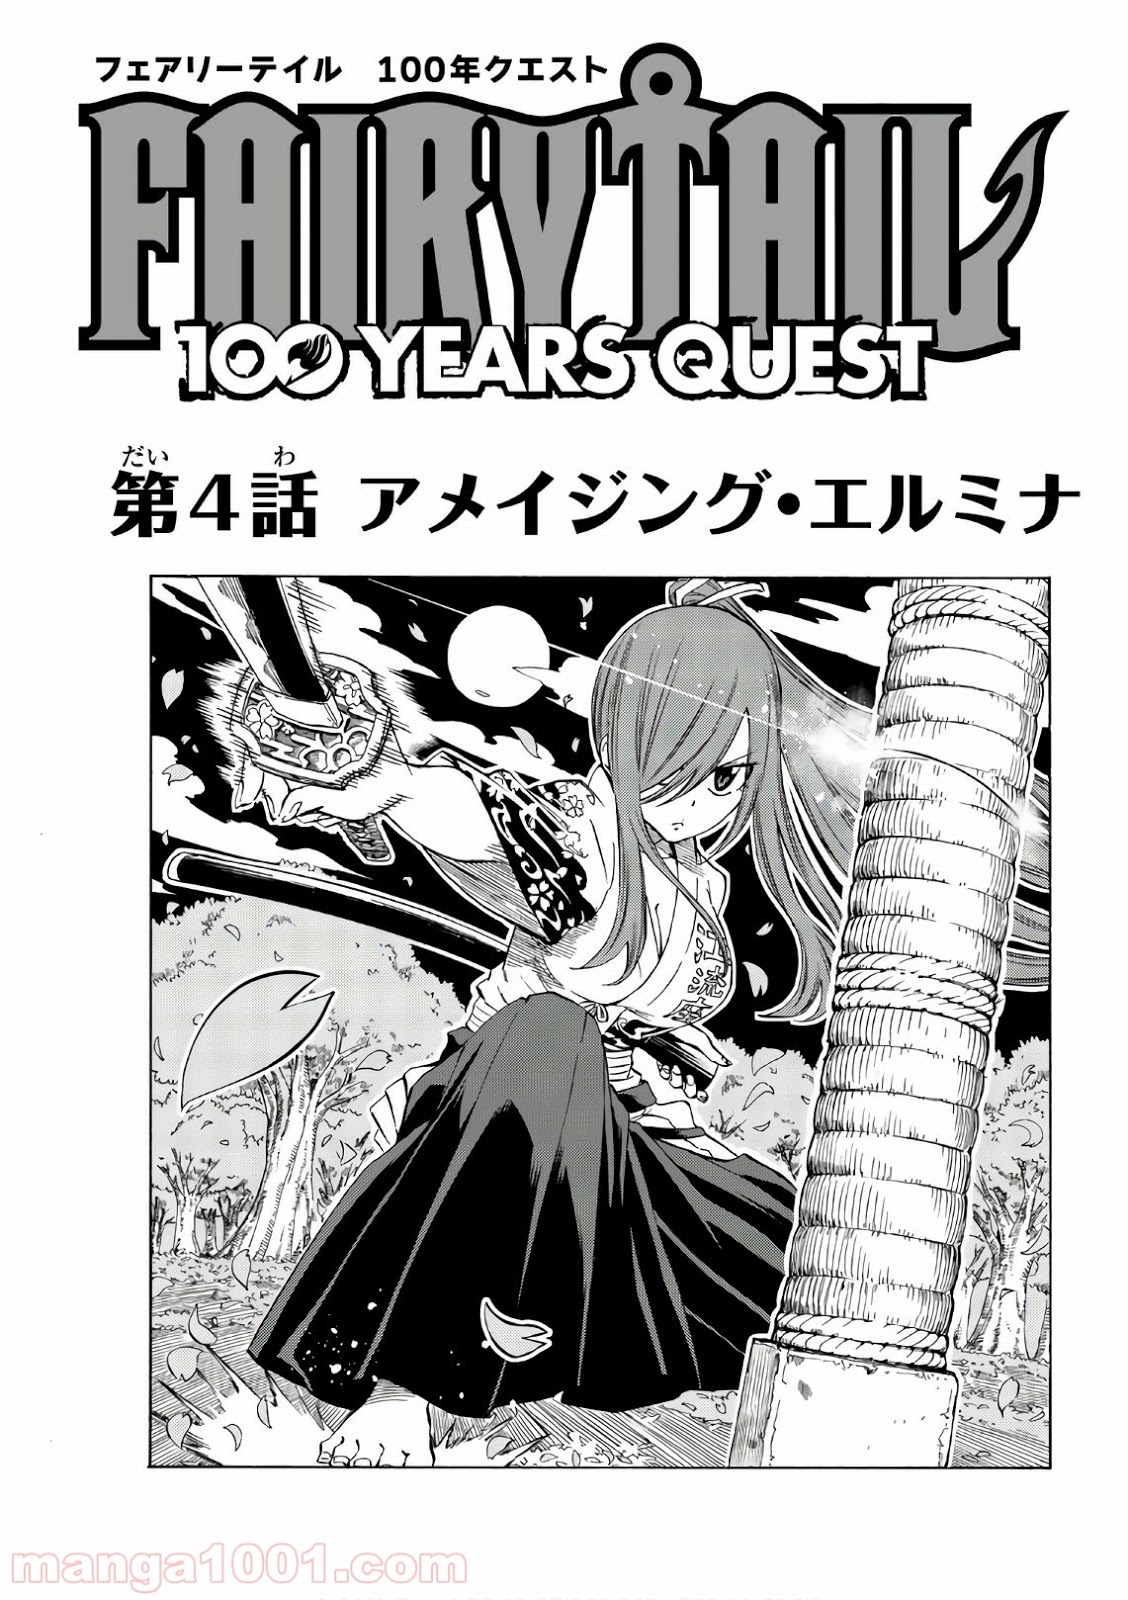 フェアリーテイル １００年クエスト Raw 第4話 Manga Raw